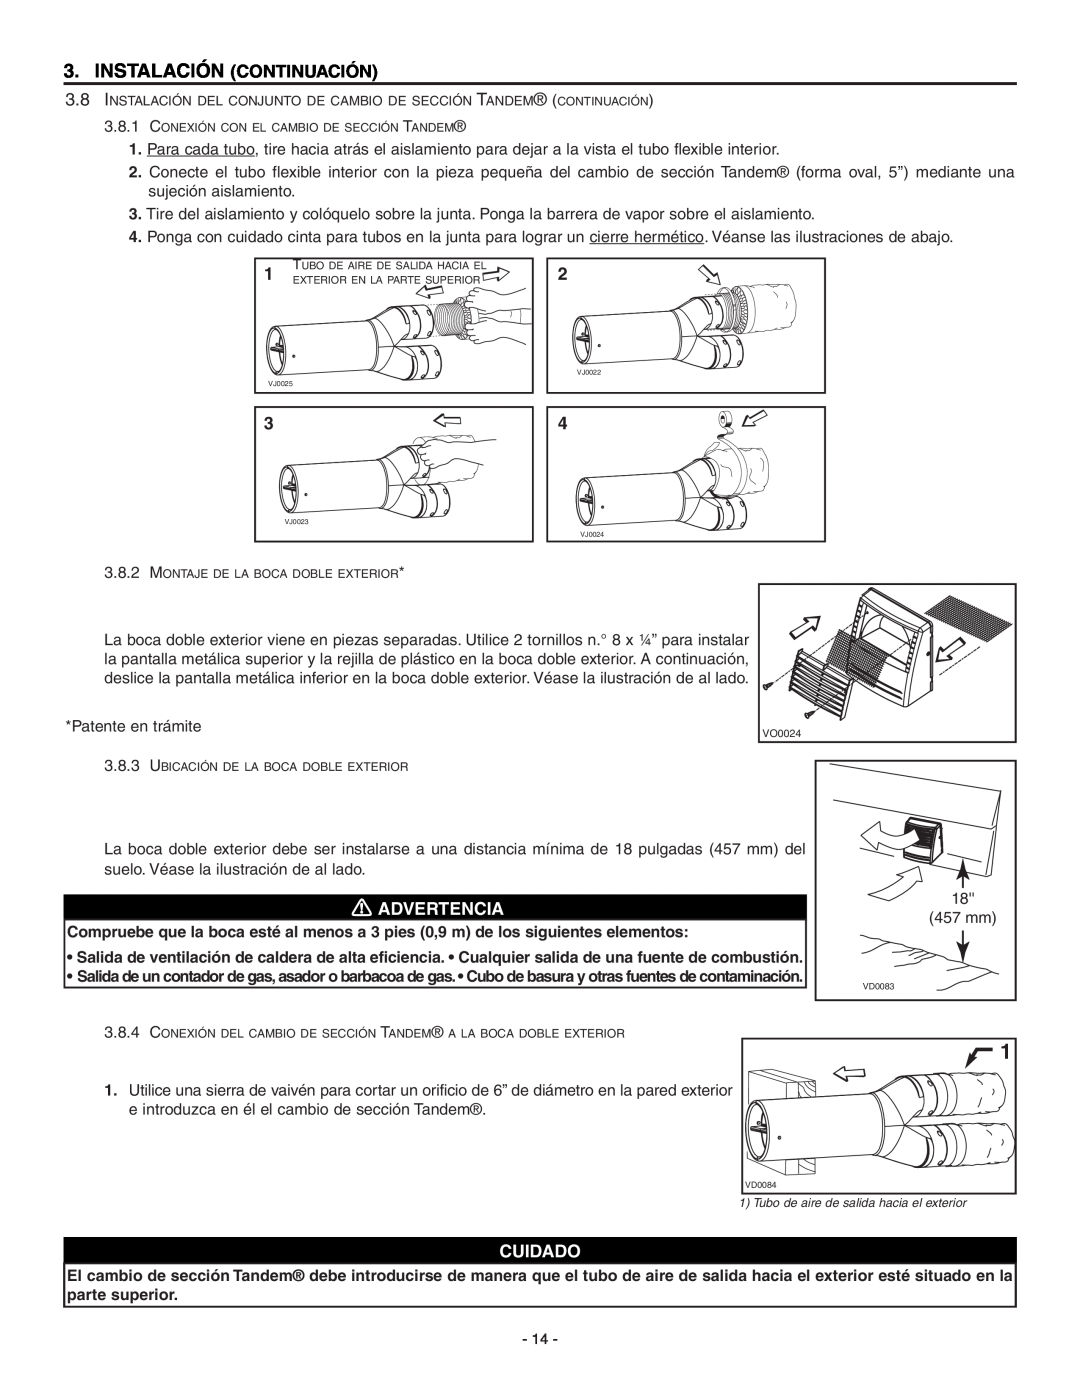 Broan ERV90HCT installation instructions Instalación Continuación, Advertencia, Cuidado, Patente en trámite 